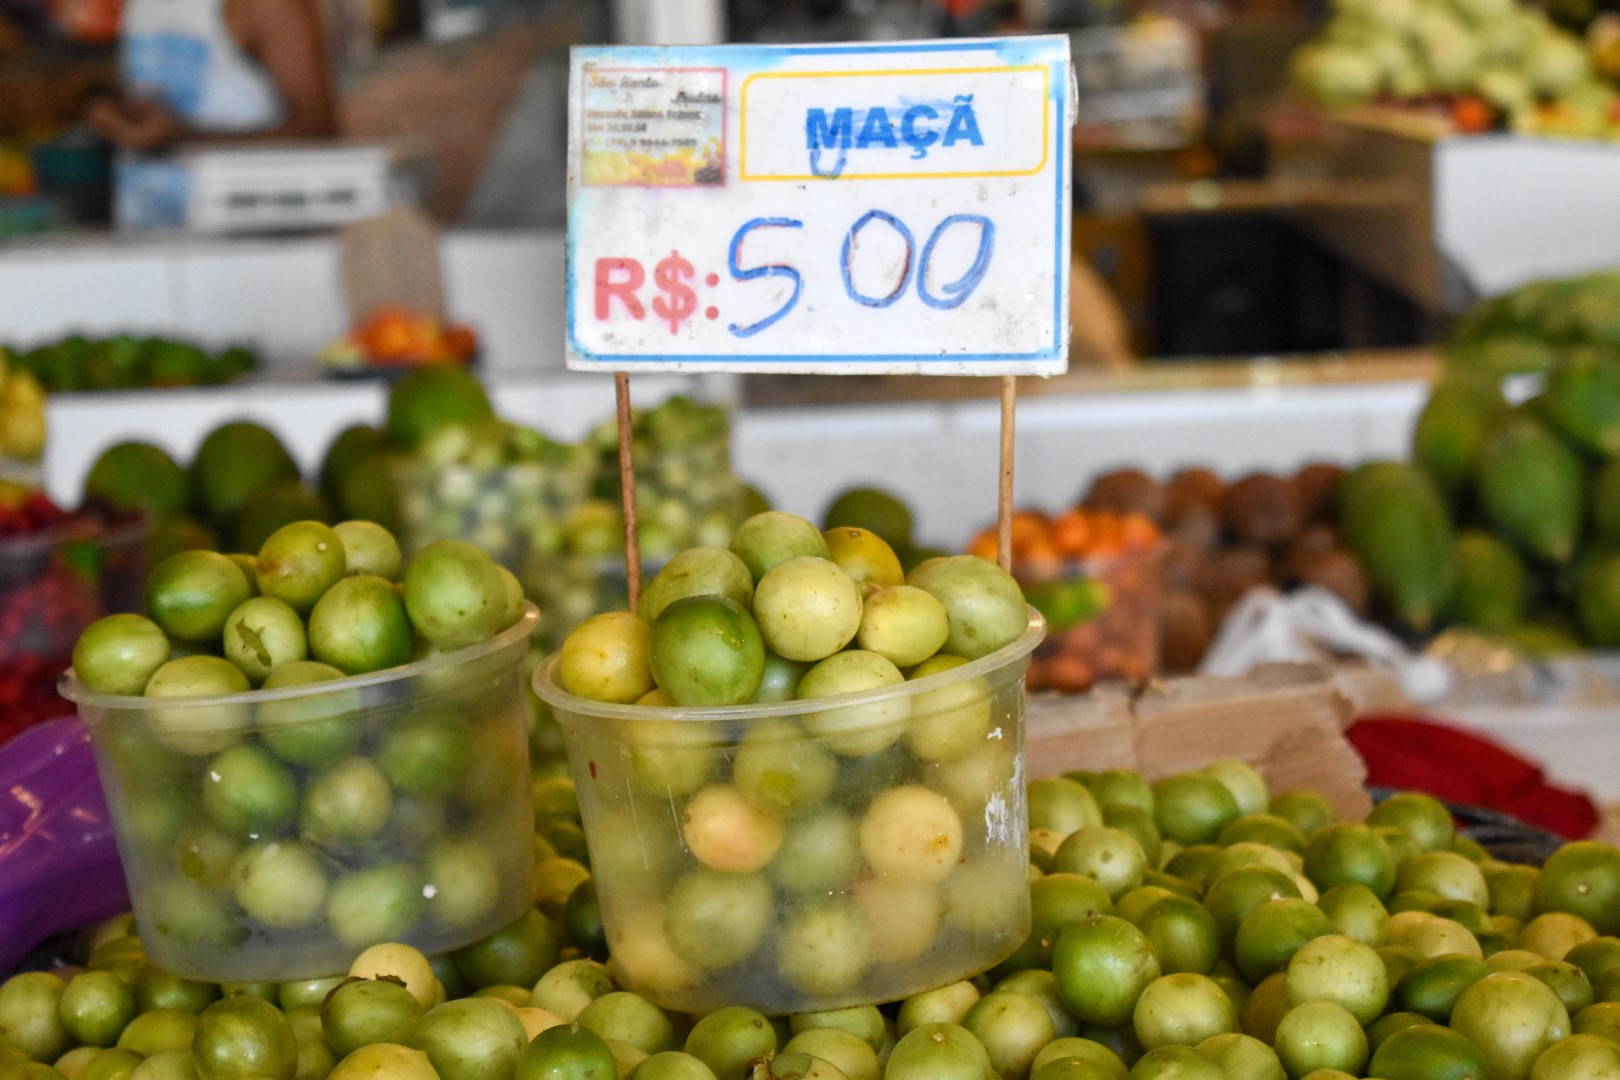 Maça (apples), Mercado Municipal Maria Virgínia Leite Franco, Mercado Albano franco 102 - 240 - Centro, Aracaju